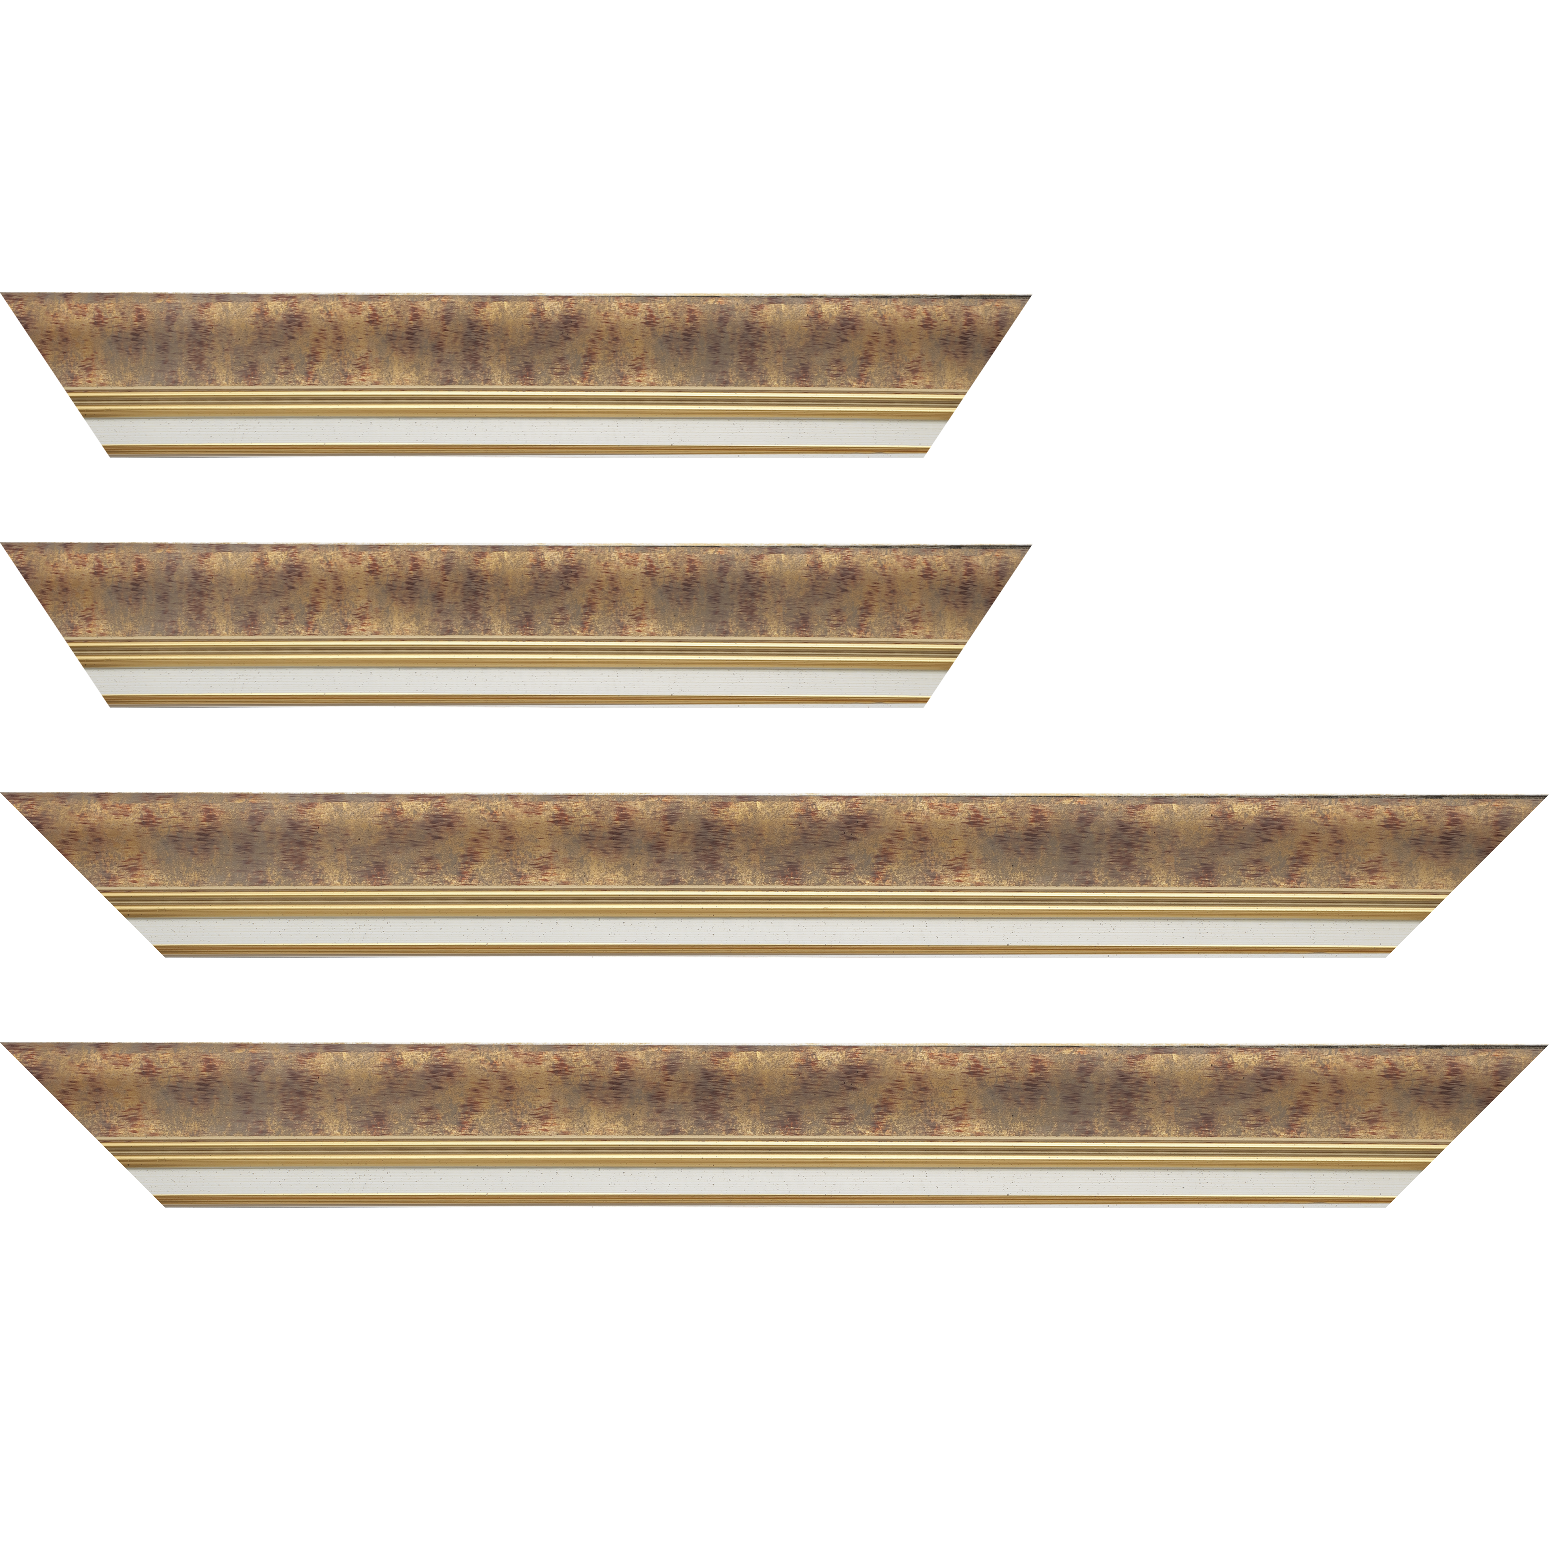 Baguette bois profil incurvé largeur 5.7cm de couleur bordeaux patiné fond or marie louise blanche mouchetée filet or intégré - 34x40